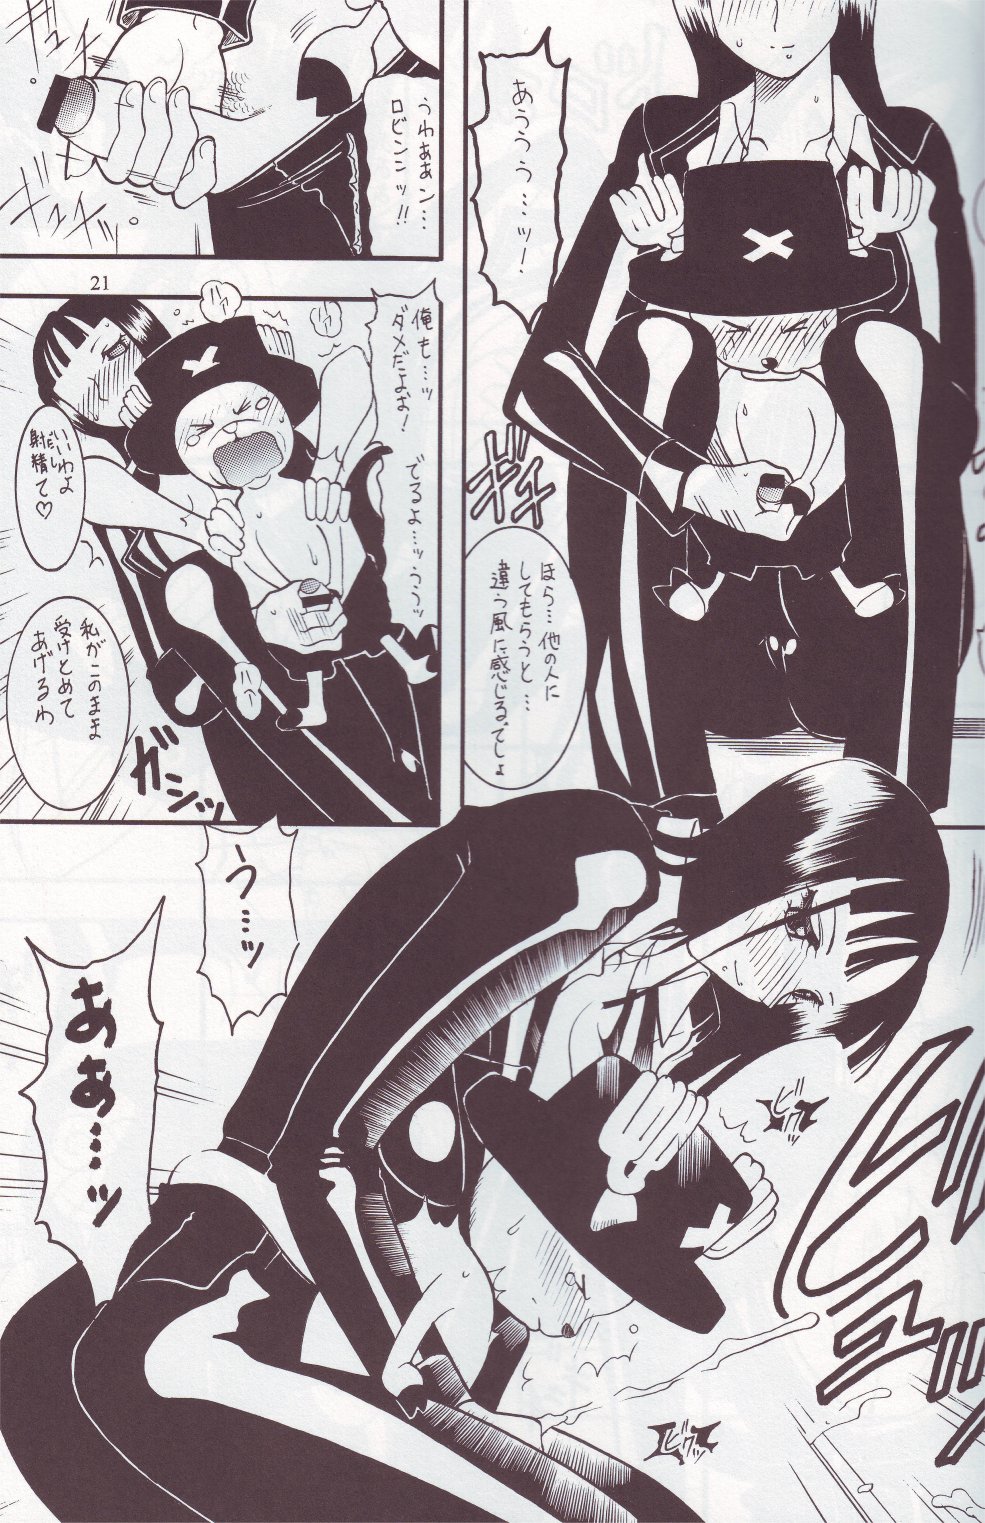 [SEMEDAIN G (Mizutani Mint, Mokkouyou Bond)] SEMEDAIN G WORKS vol.24 - Shuukan Shounen Jump Hon 4 (Bleach, One Piece) page 20 full